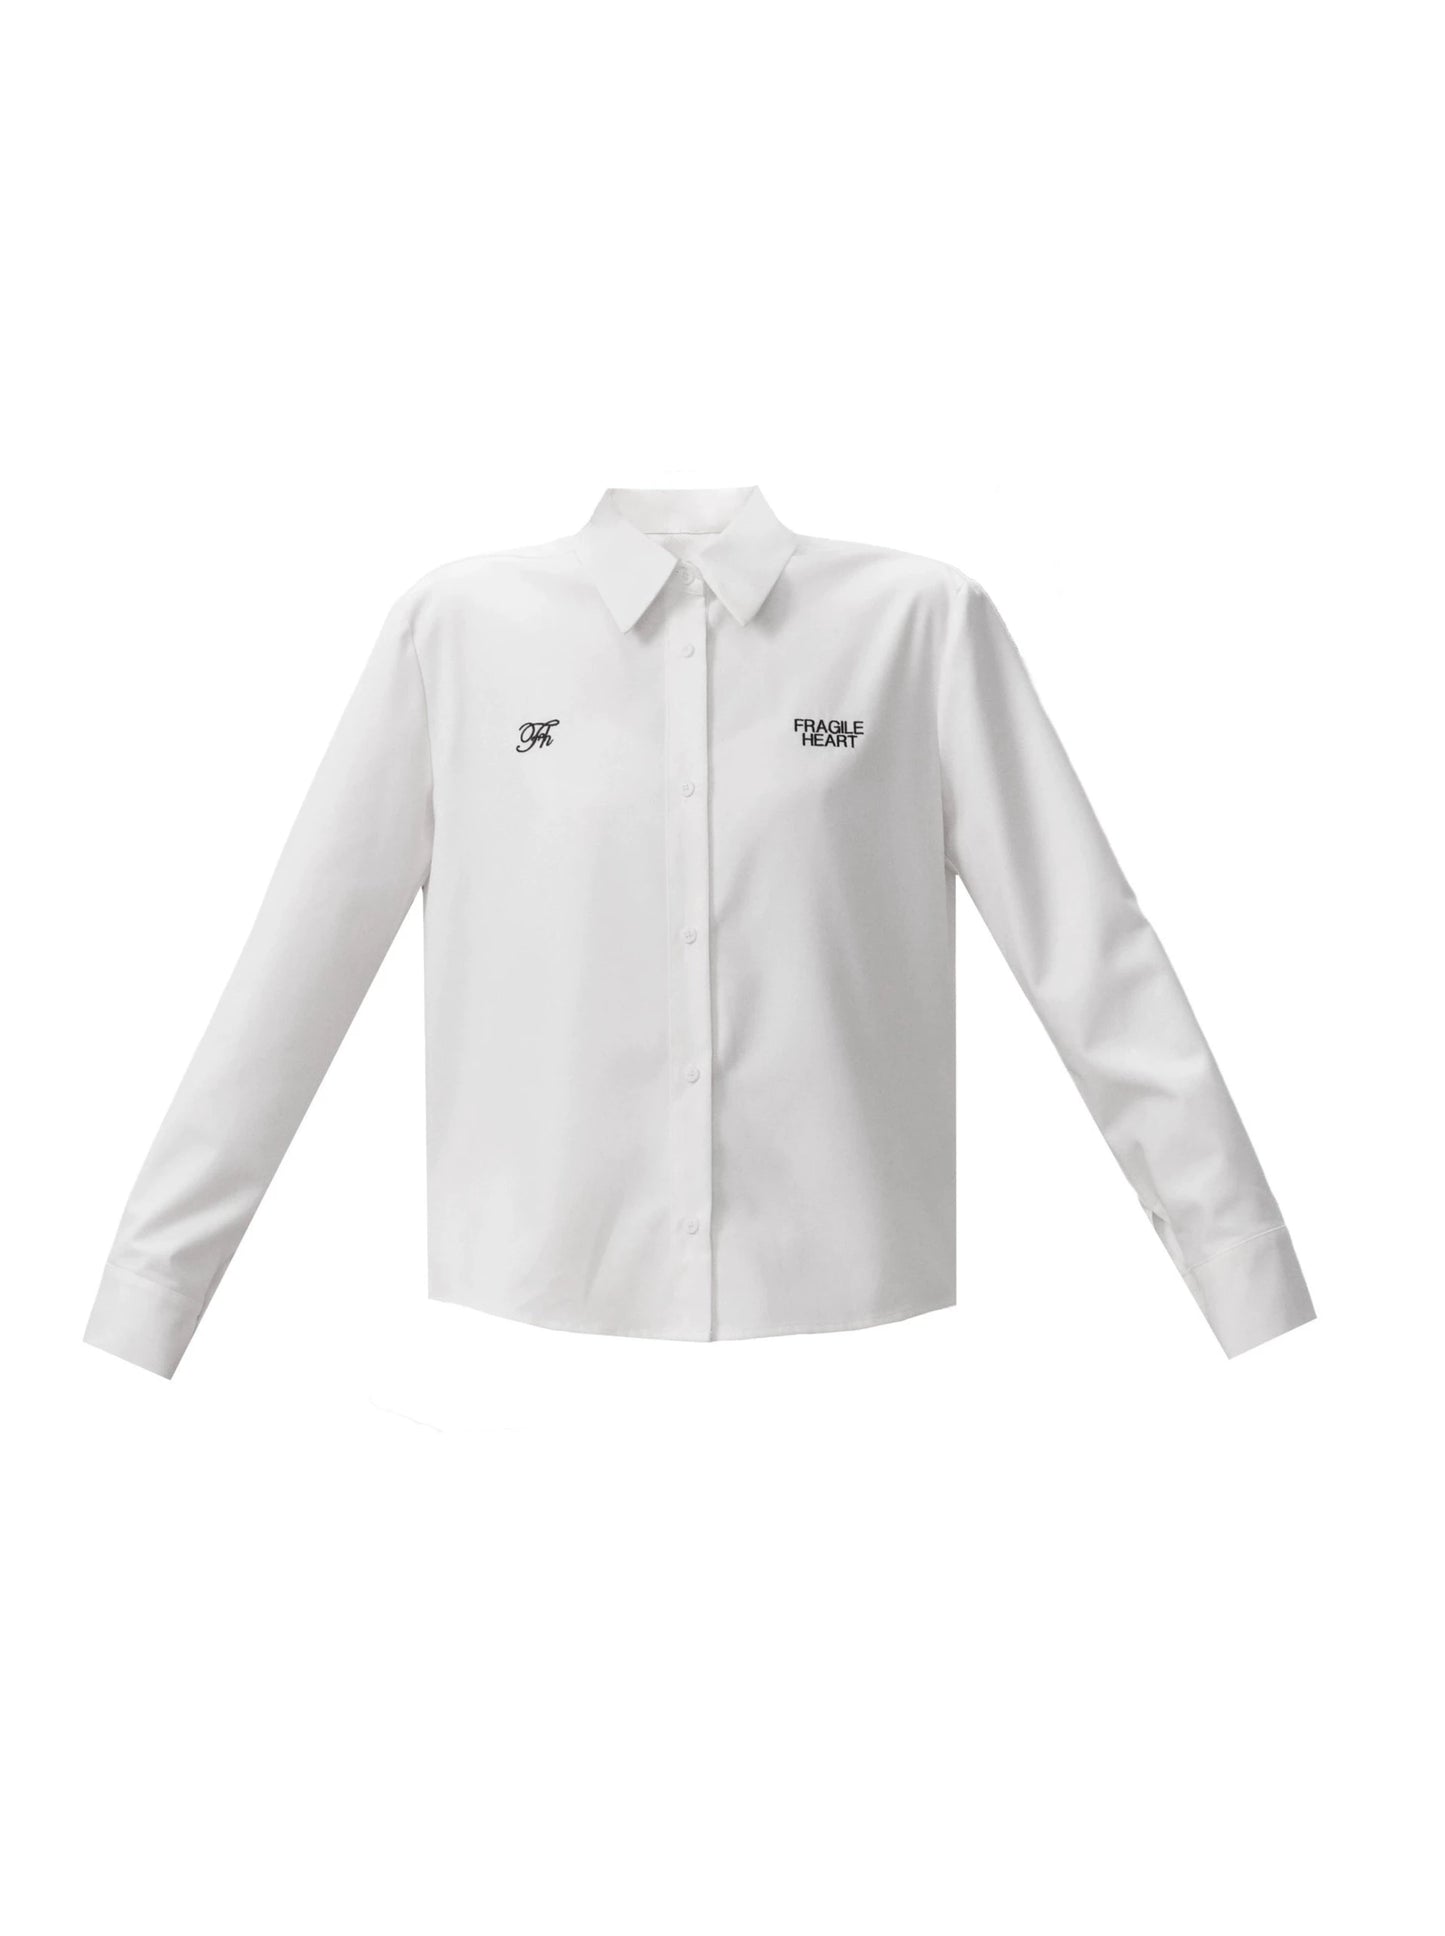 ピュアホワイトフレンチシャツ+レースキャミソール+キュロット